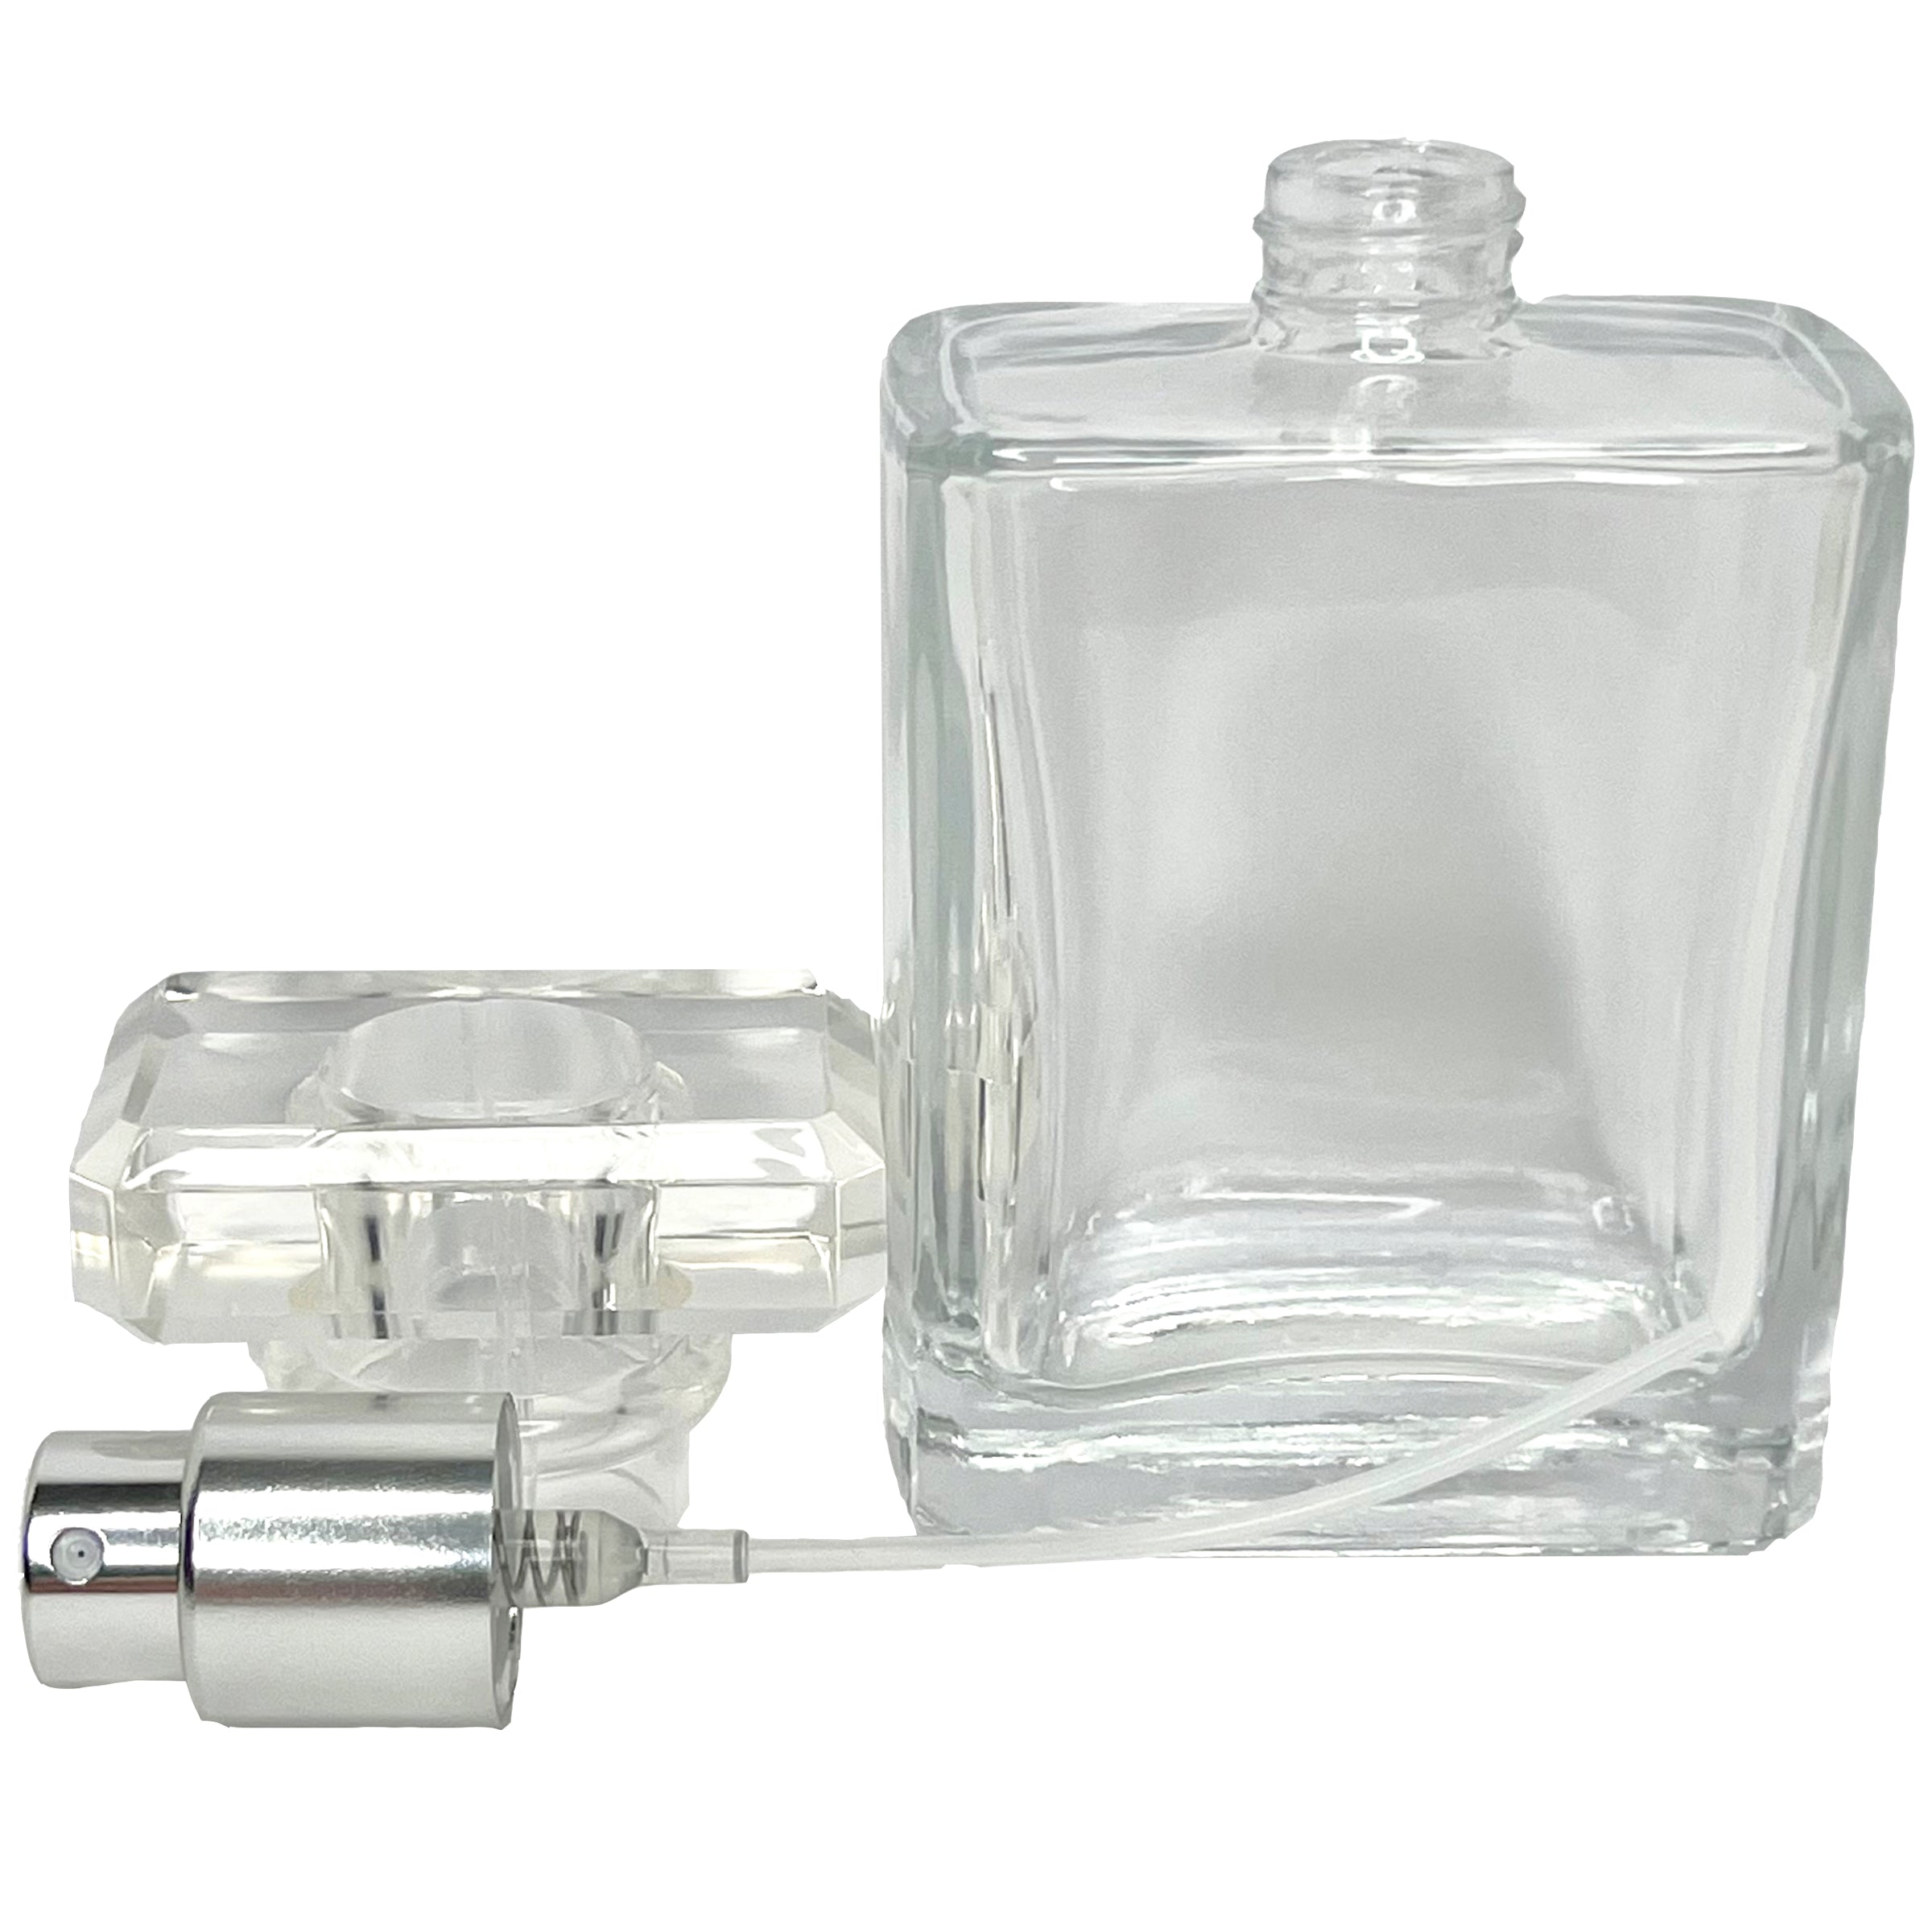 50ml 1.7oz Glass Perfume Square Spray Bottle Silver Atomizer